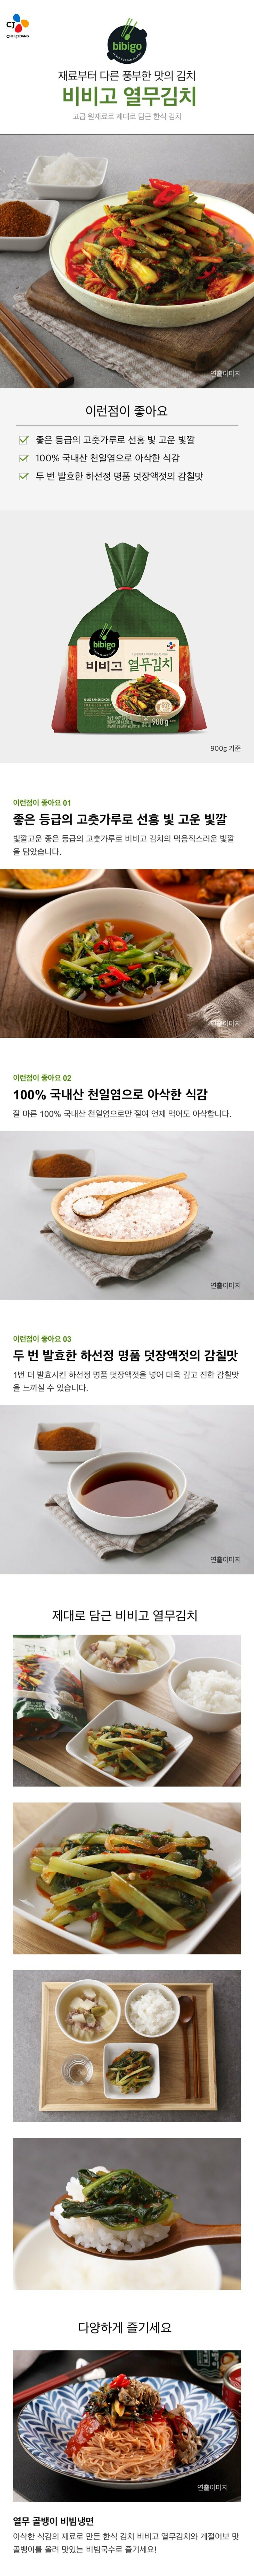 비비고-열무김치-15kg-1000140145298